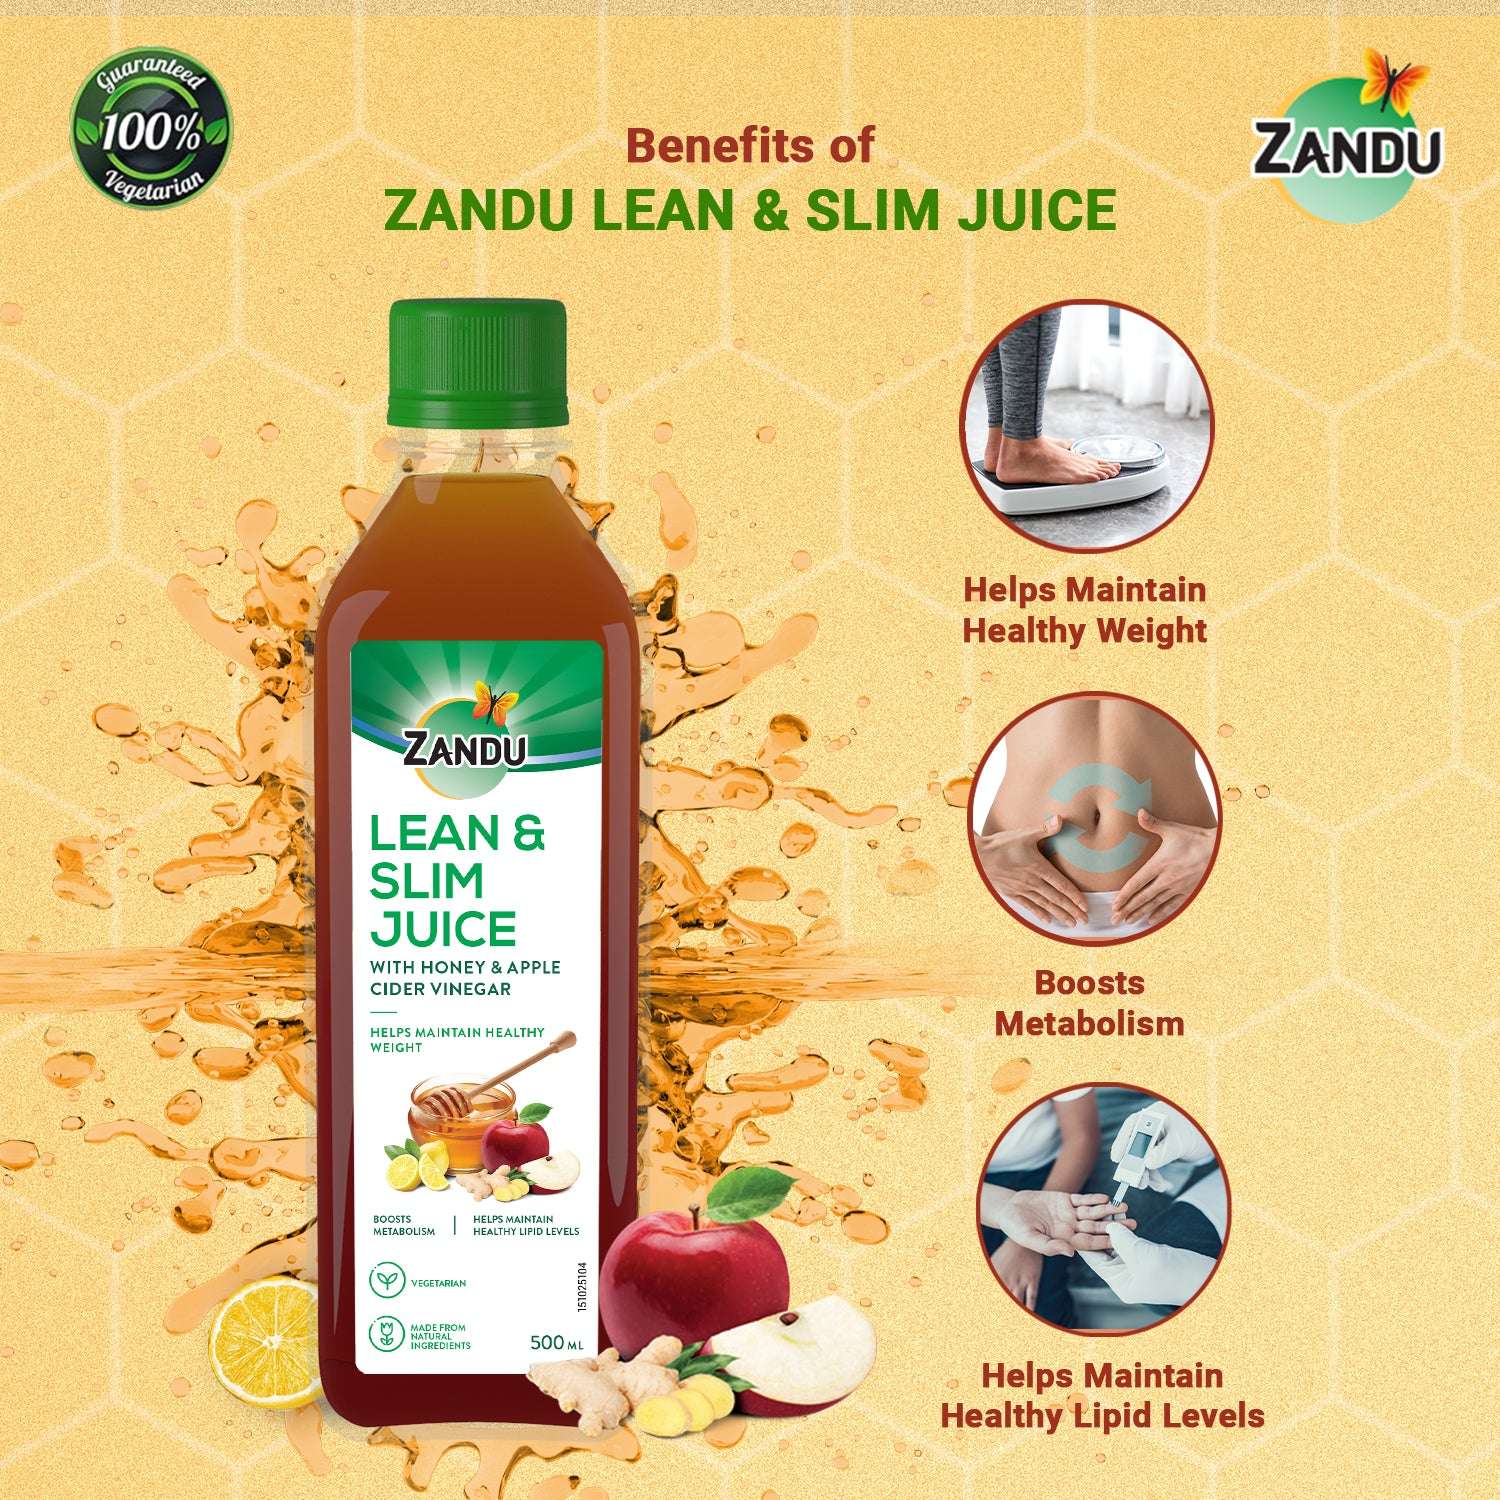 Zandu Lean and Slim Juice Benefits